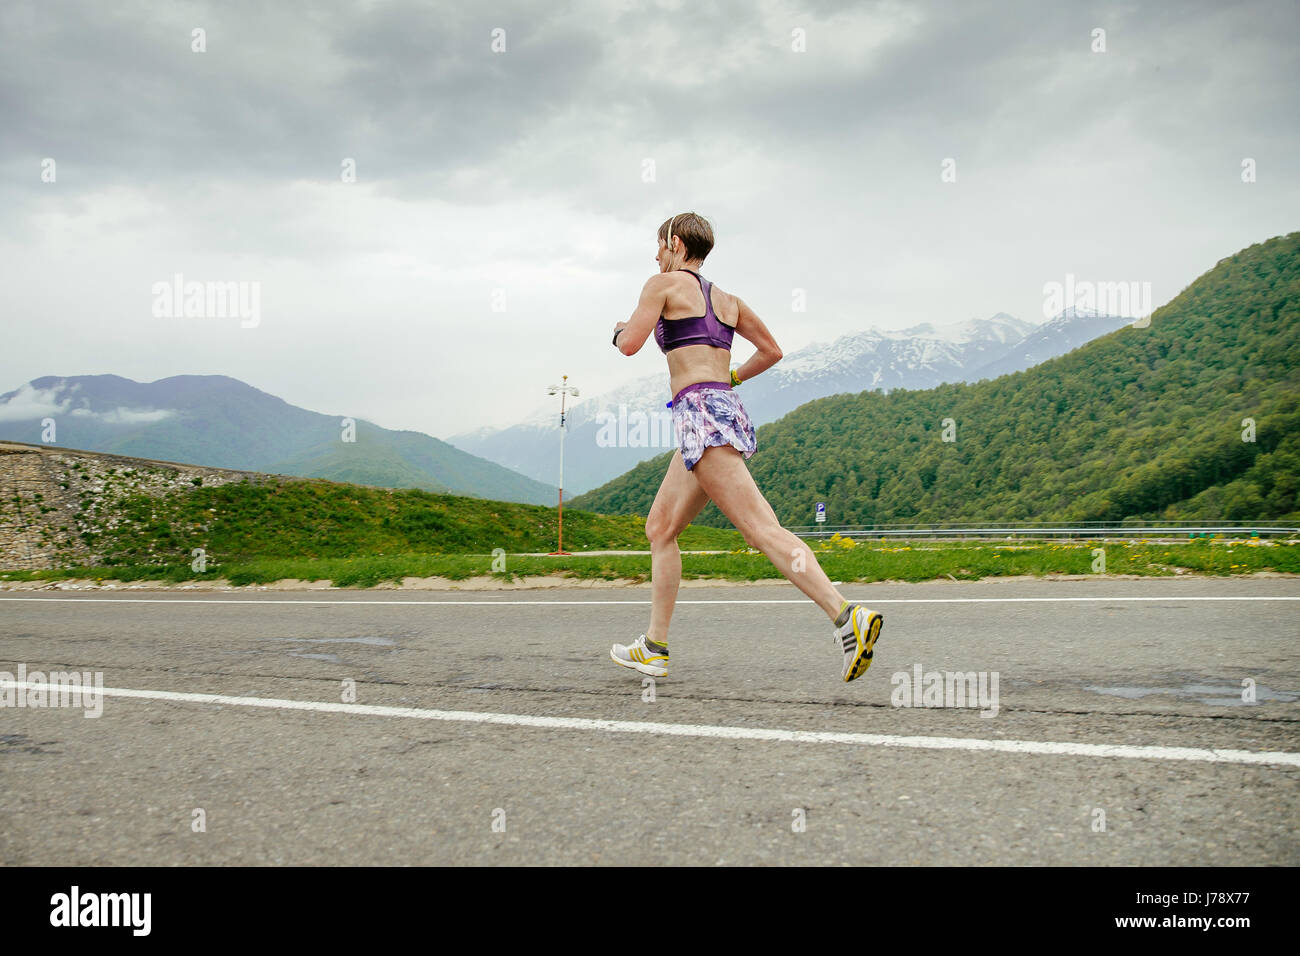 Una donna di mezza età runner in esecuzione su strada asfaltata in gara Spring Mountain marathon Foto Stock